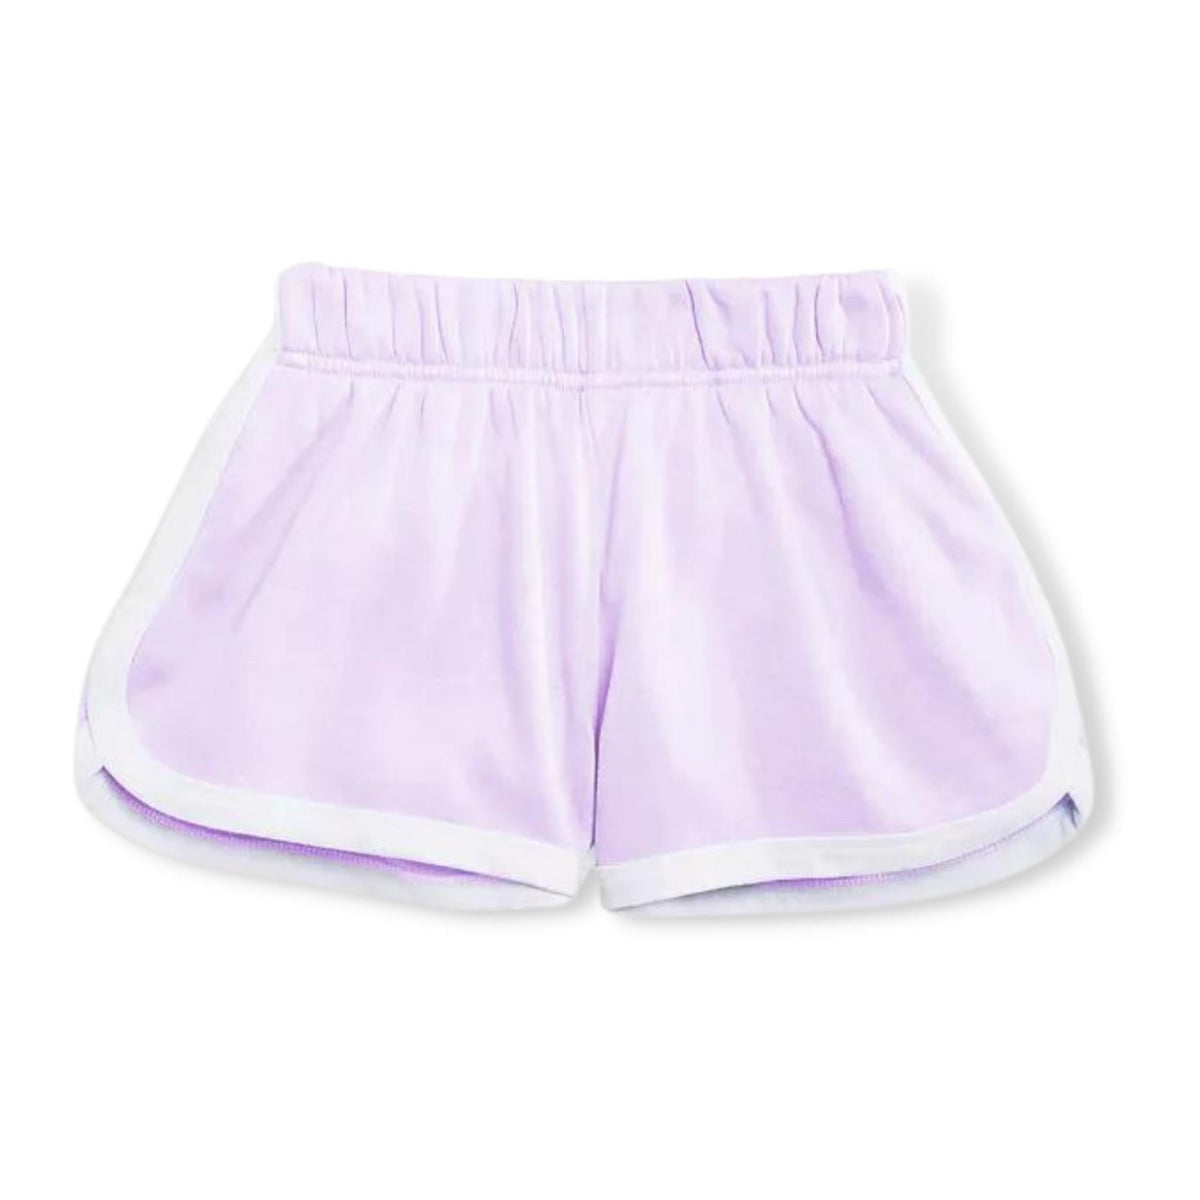 KatieJNYC Lilac Kimmie Shorts - a Spirit Animal - shorts $30-$60 active Jun 2022 bottoms